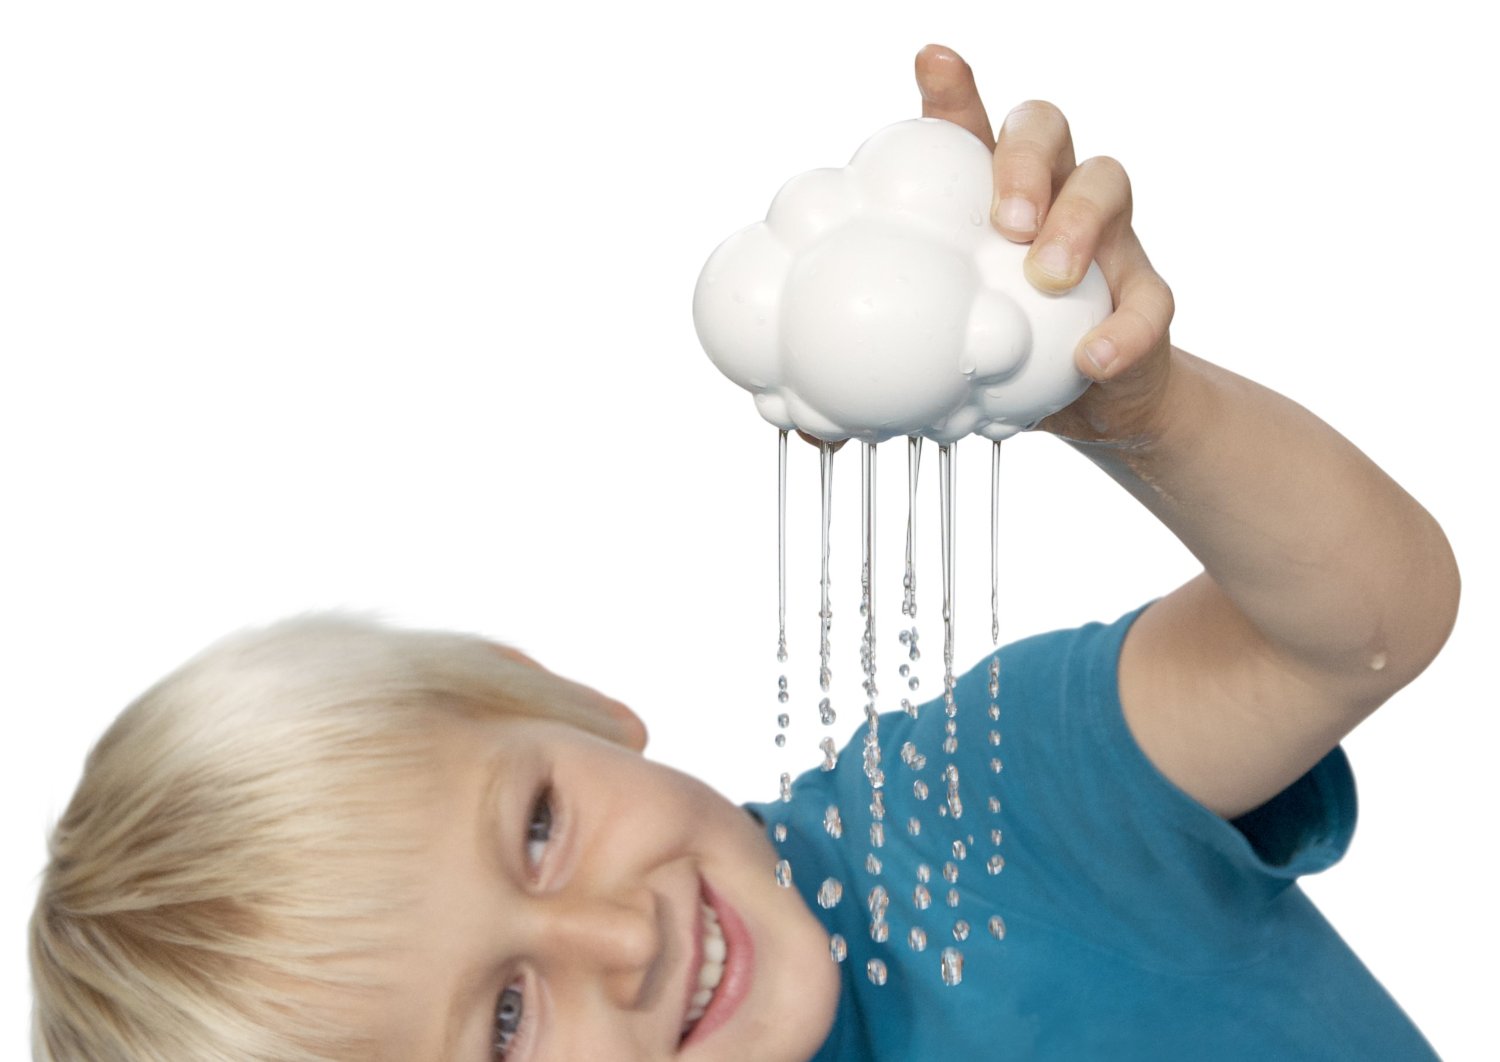 rain-cloud-bath-toy